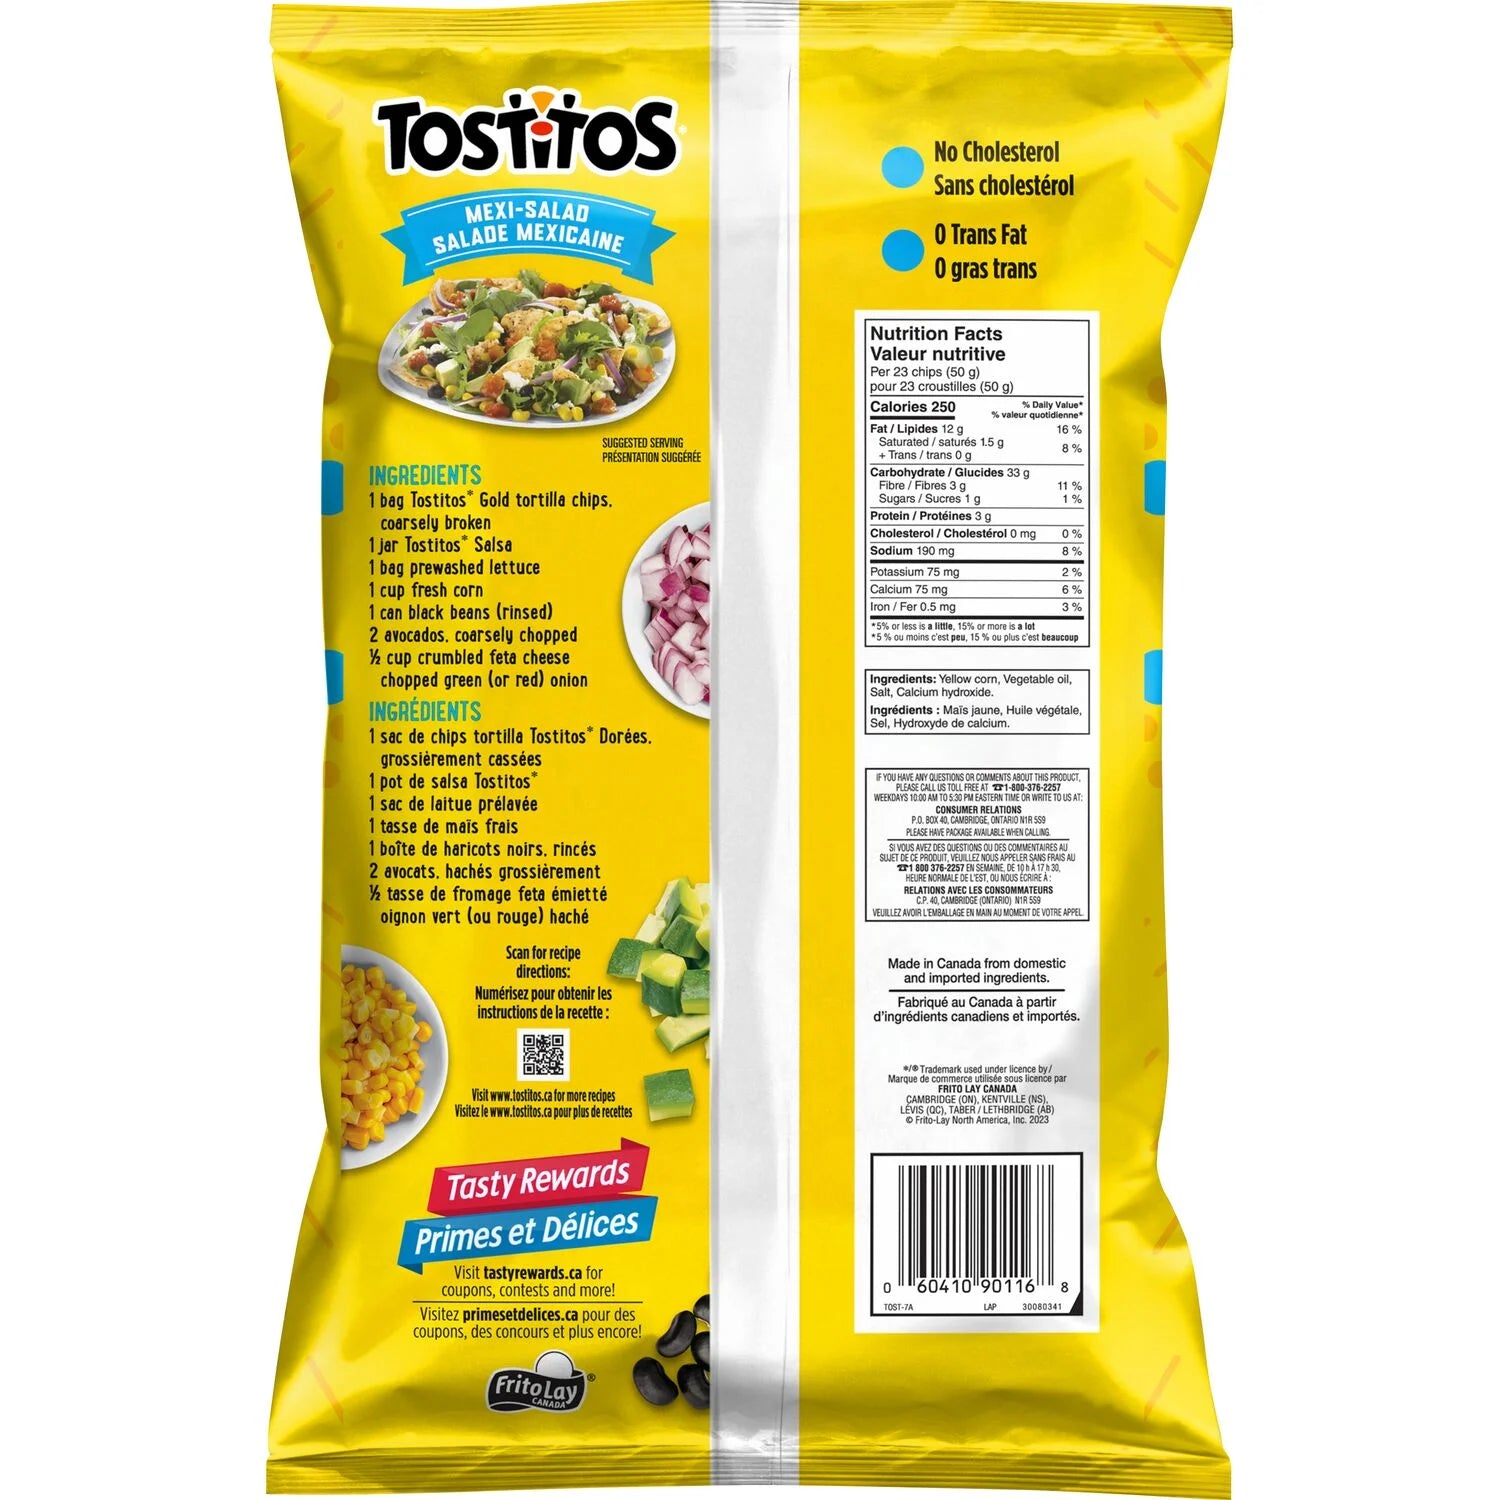 Tostitos Gold Tortilla Chips, back of bag